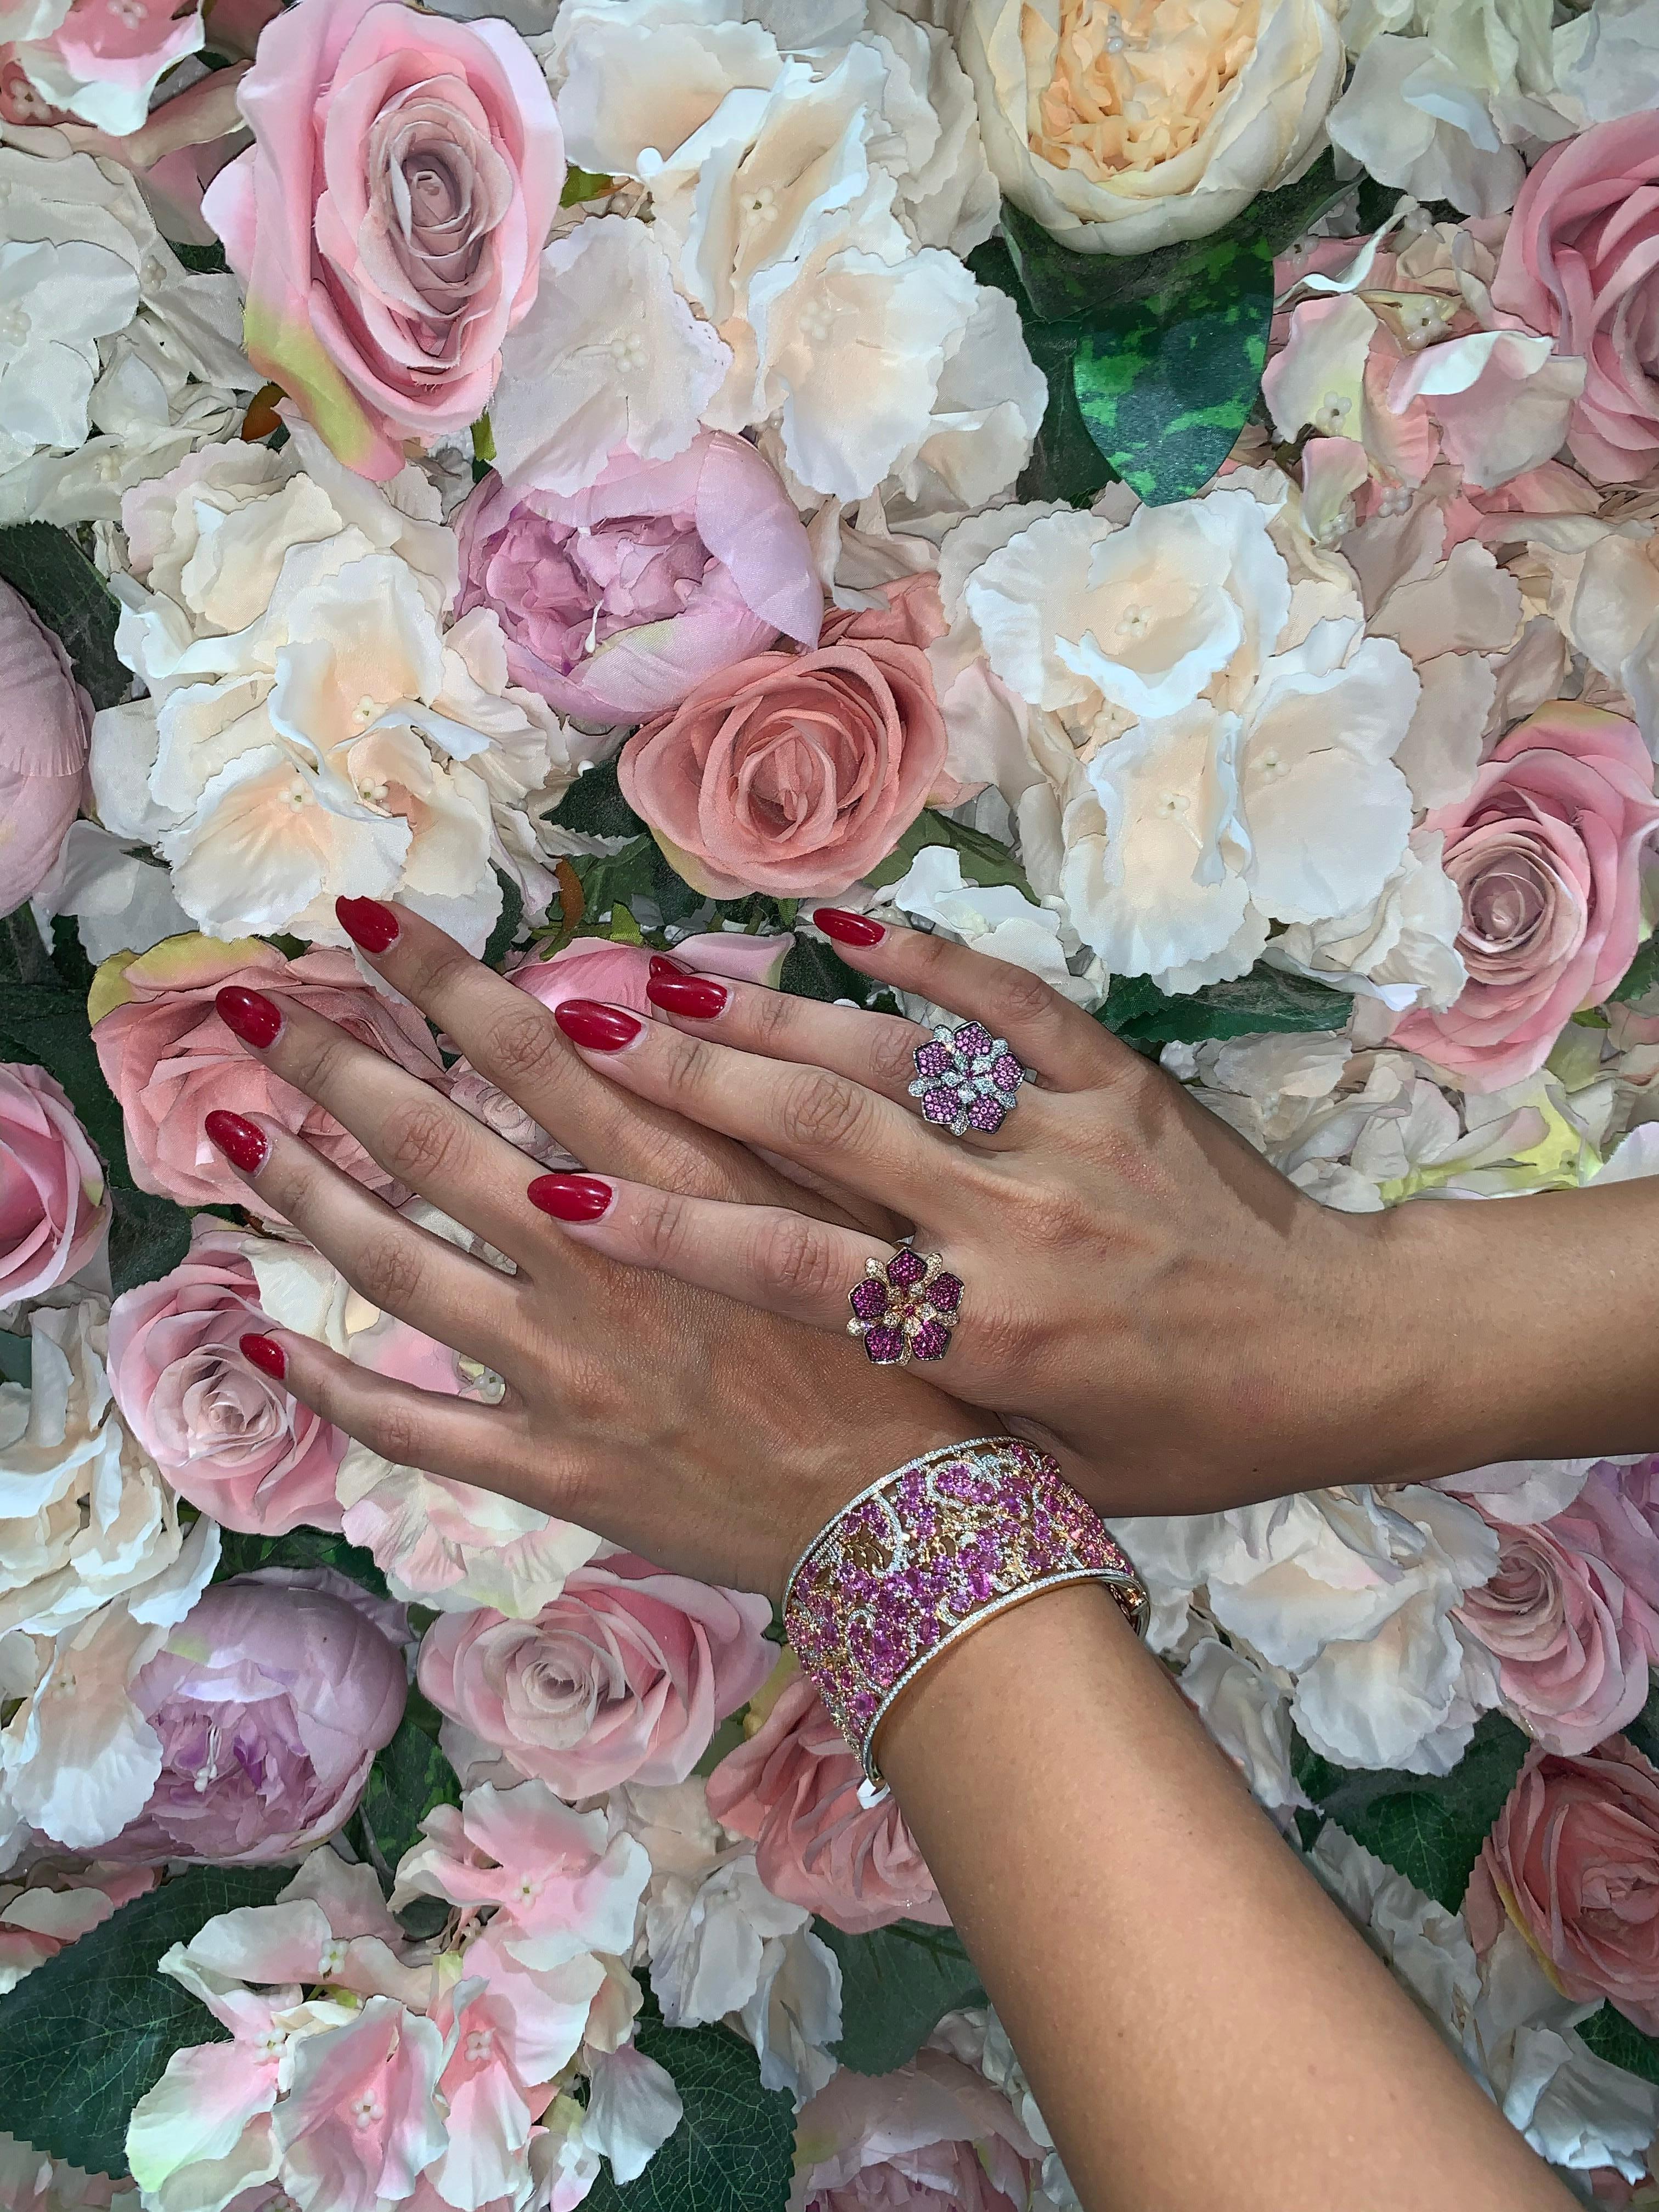 Dieser Ring ist Teil der exklusiven Floral Fantasy Collection'S, die von Sunita Nahata präsentiert wird. Diese einfachen Blumenmuster erhalten durch die mehrschichtige architektonische Konstruktion der Stücke einen eleganten Touch. Darüber hinaus